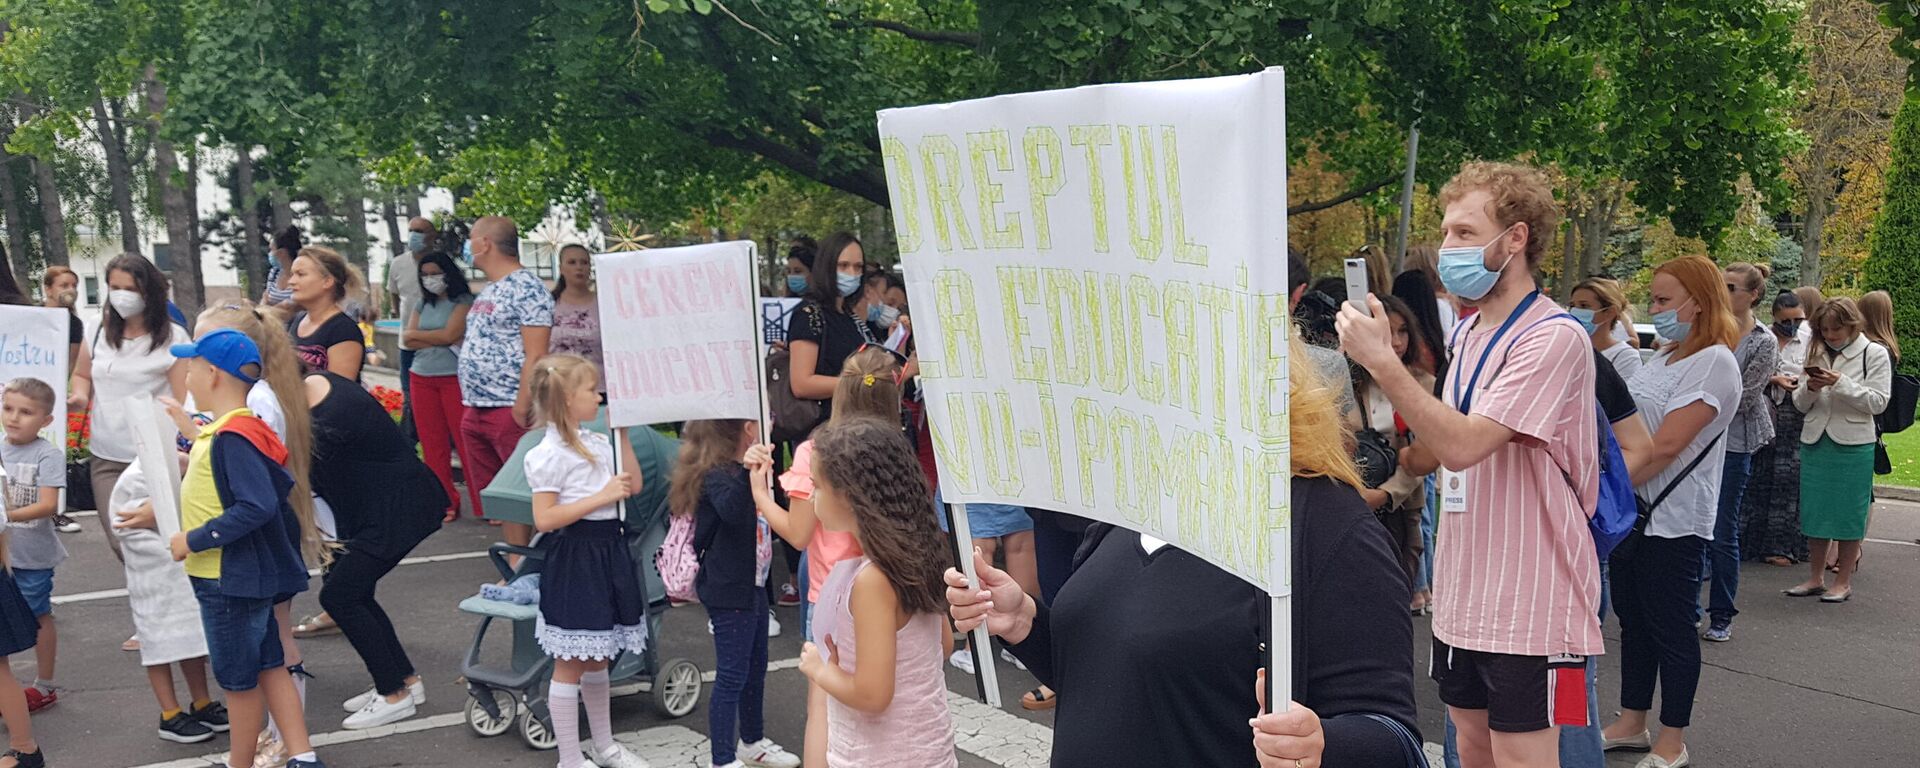 Протест представителей ассоциации Солидарные родители у здания правительства - Sputnik Молдова, 1920, 01.09.2021